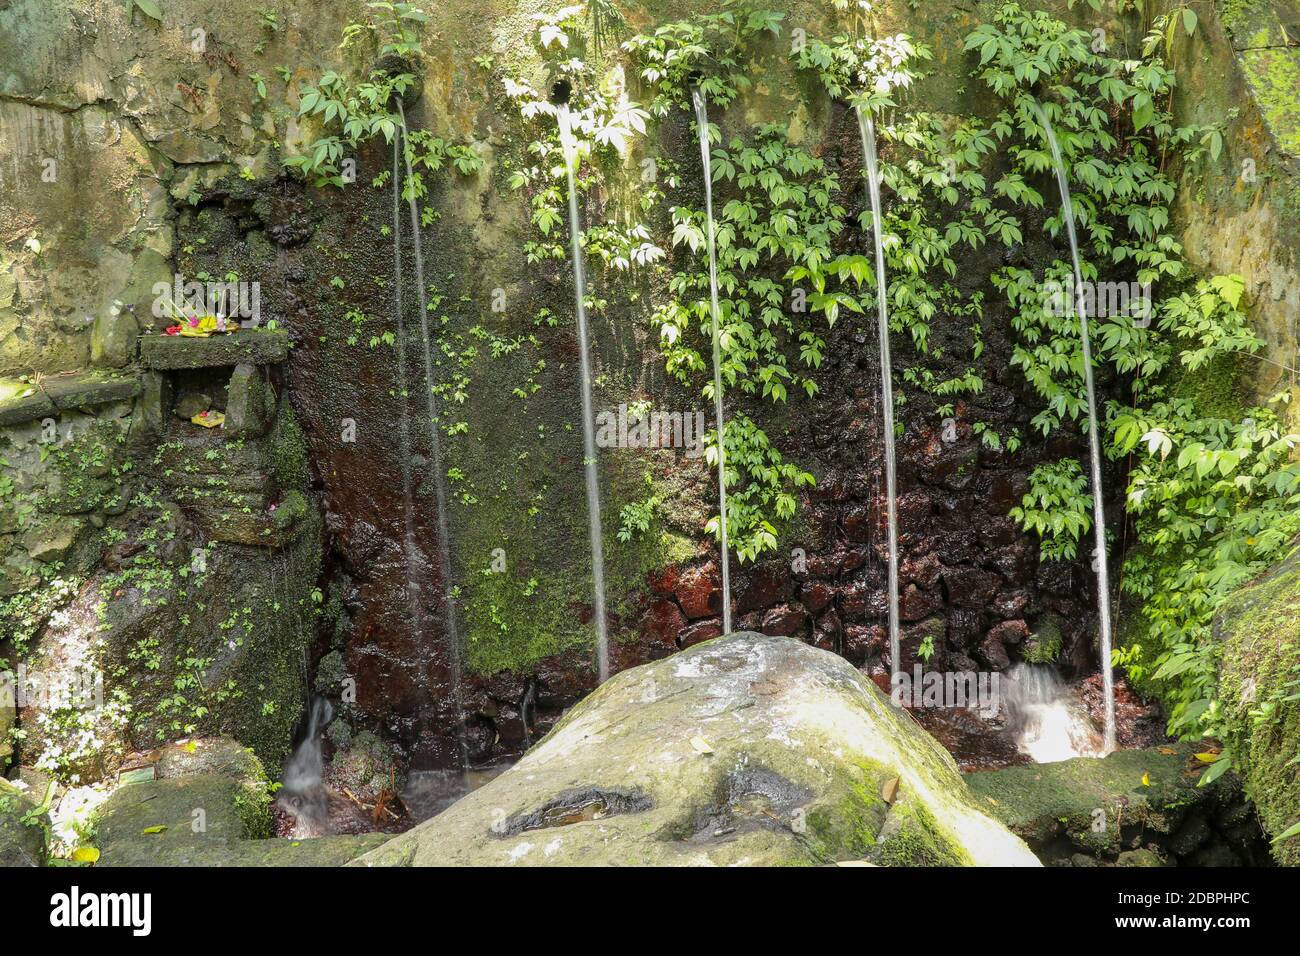 Sorgenti d'acqua sacra nella Valle Pakerisan presso il complesso di sepoltura di Tampaksiring. Gunung Kawi, Bali, Indonesia. Sacrifici agli dei sull'altare. Io Foto Stock